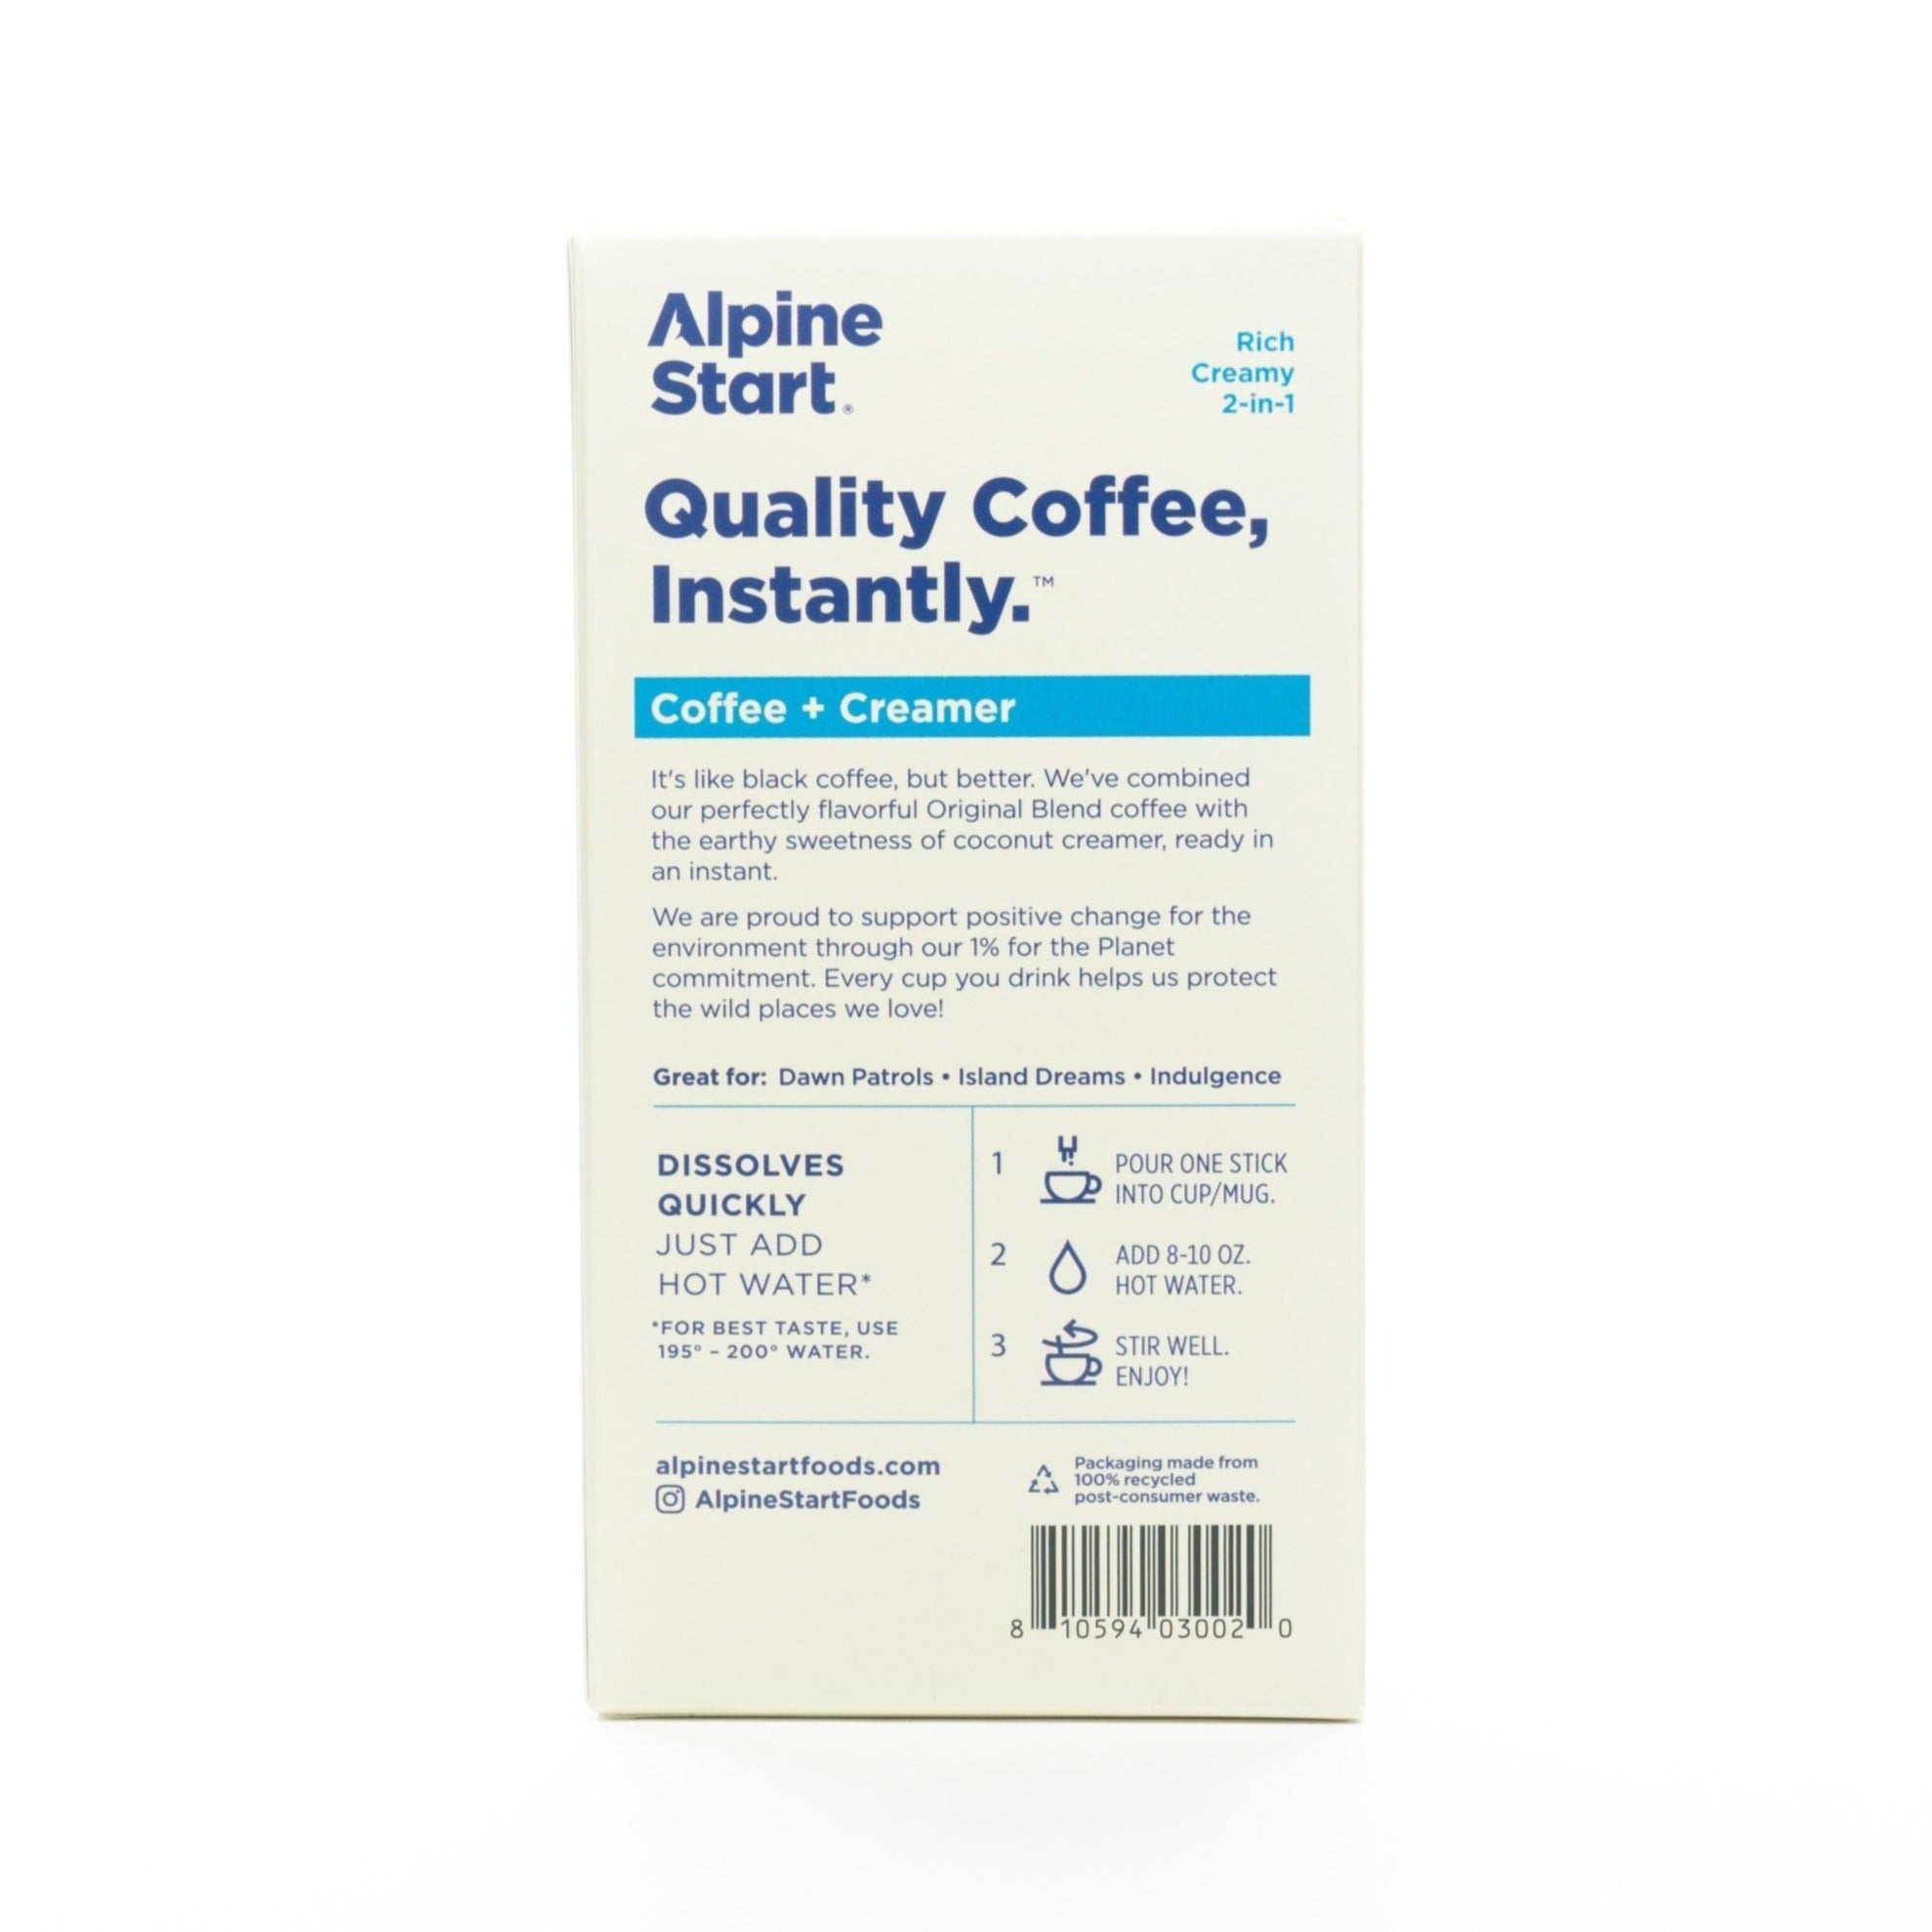 Dairy-Free Coffee + Creamer Instant Latte - Alpine Start